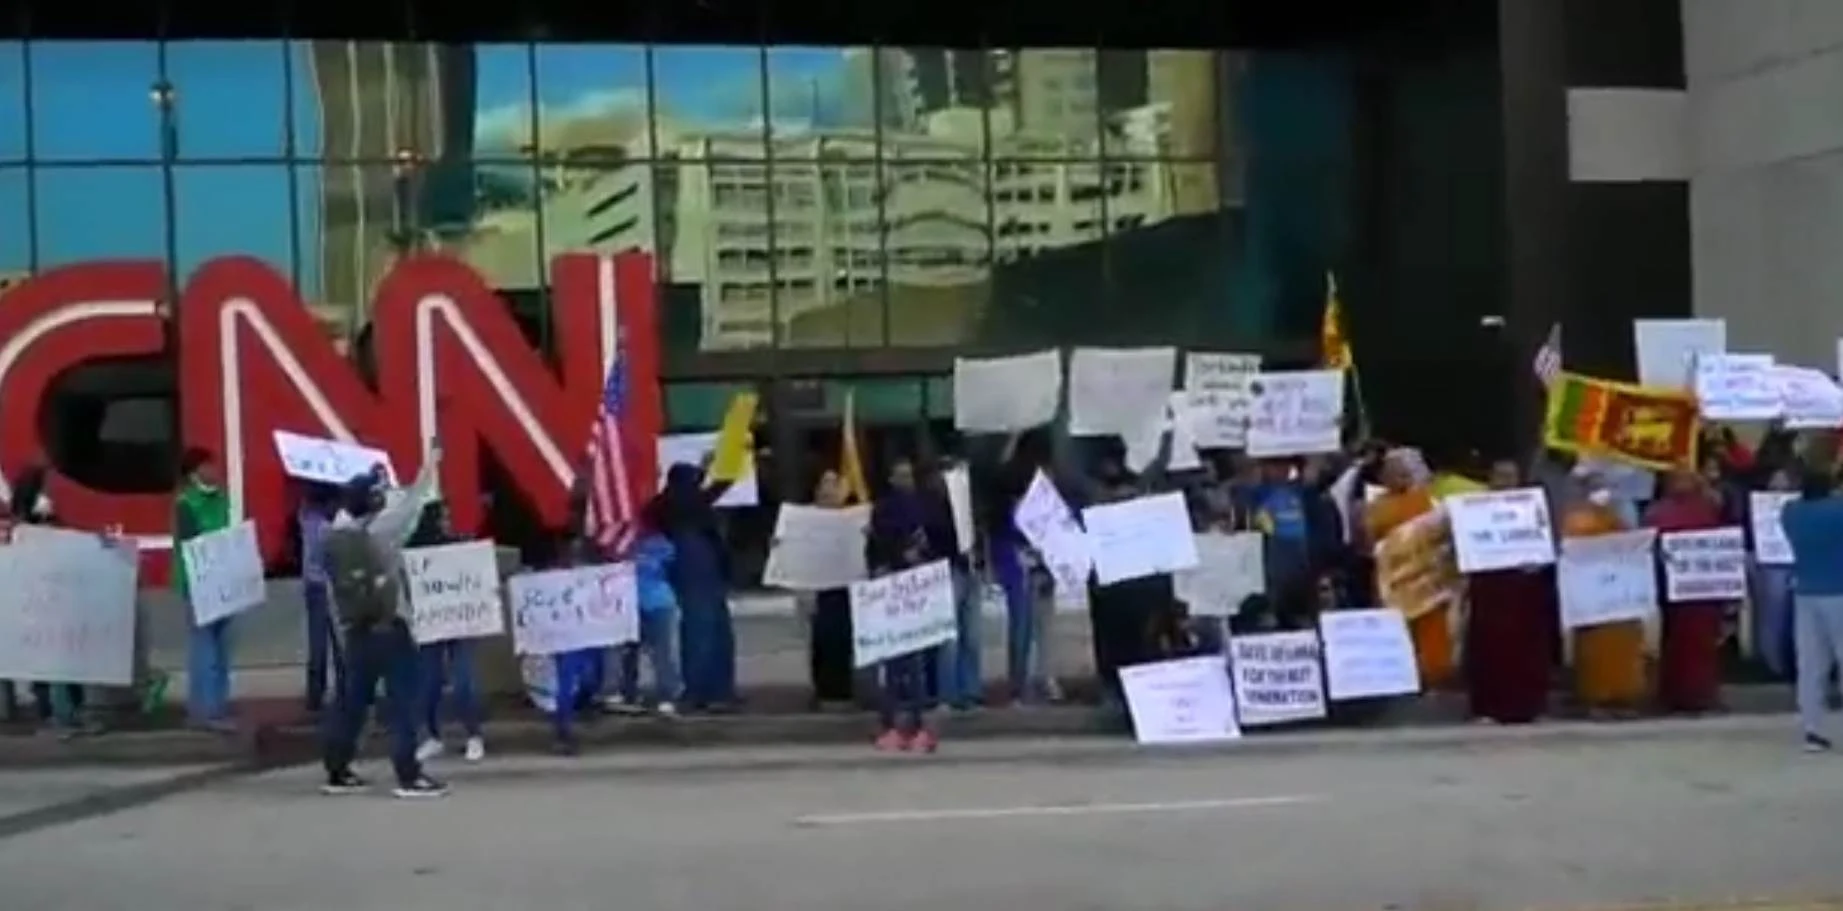 Sri-Lankan-protest-in-front-of-CNN-headquarters-in-Atlanta-USA